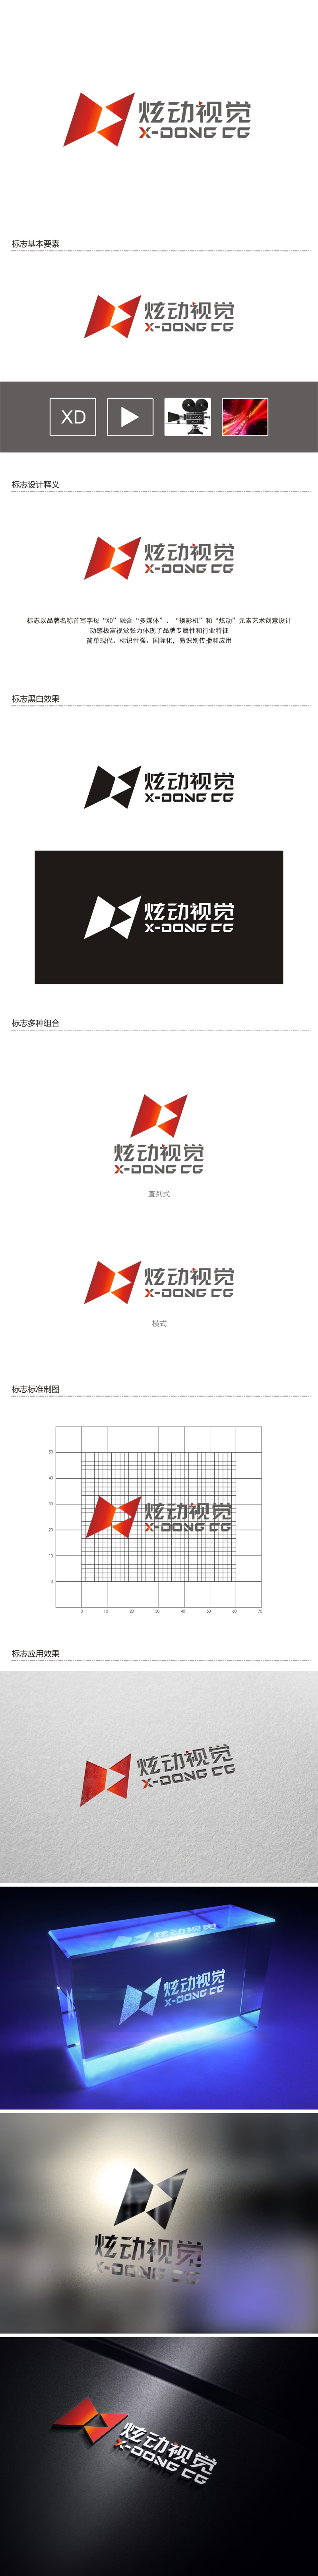 陈国伟的炫动视觉logo设计